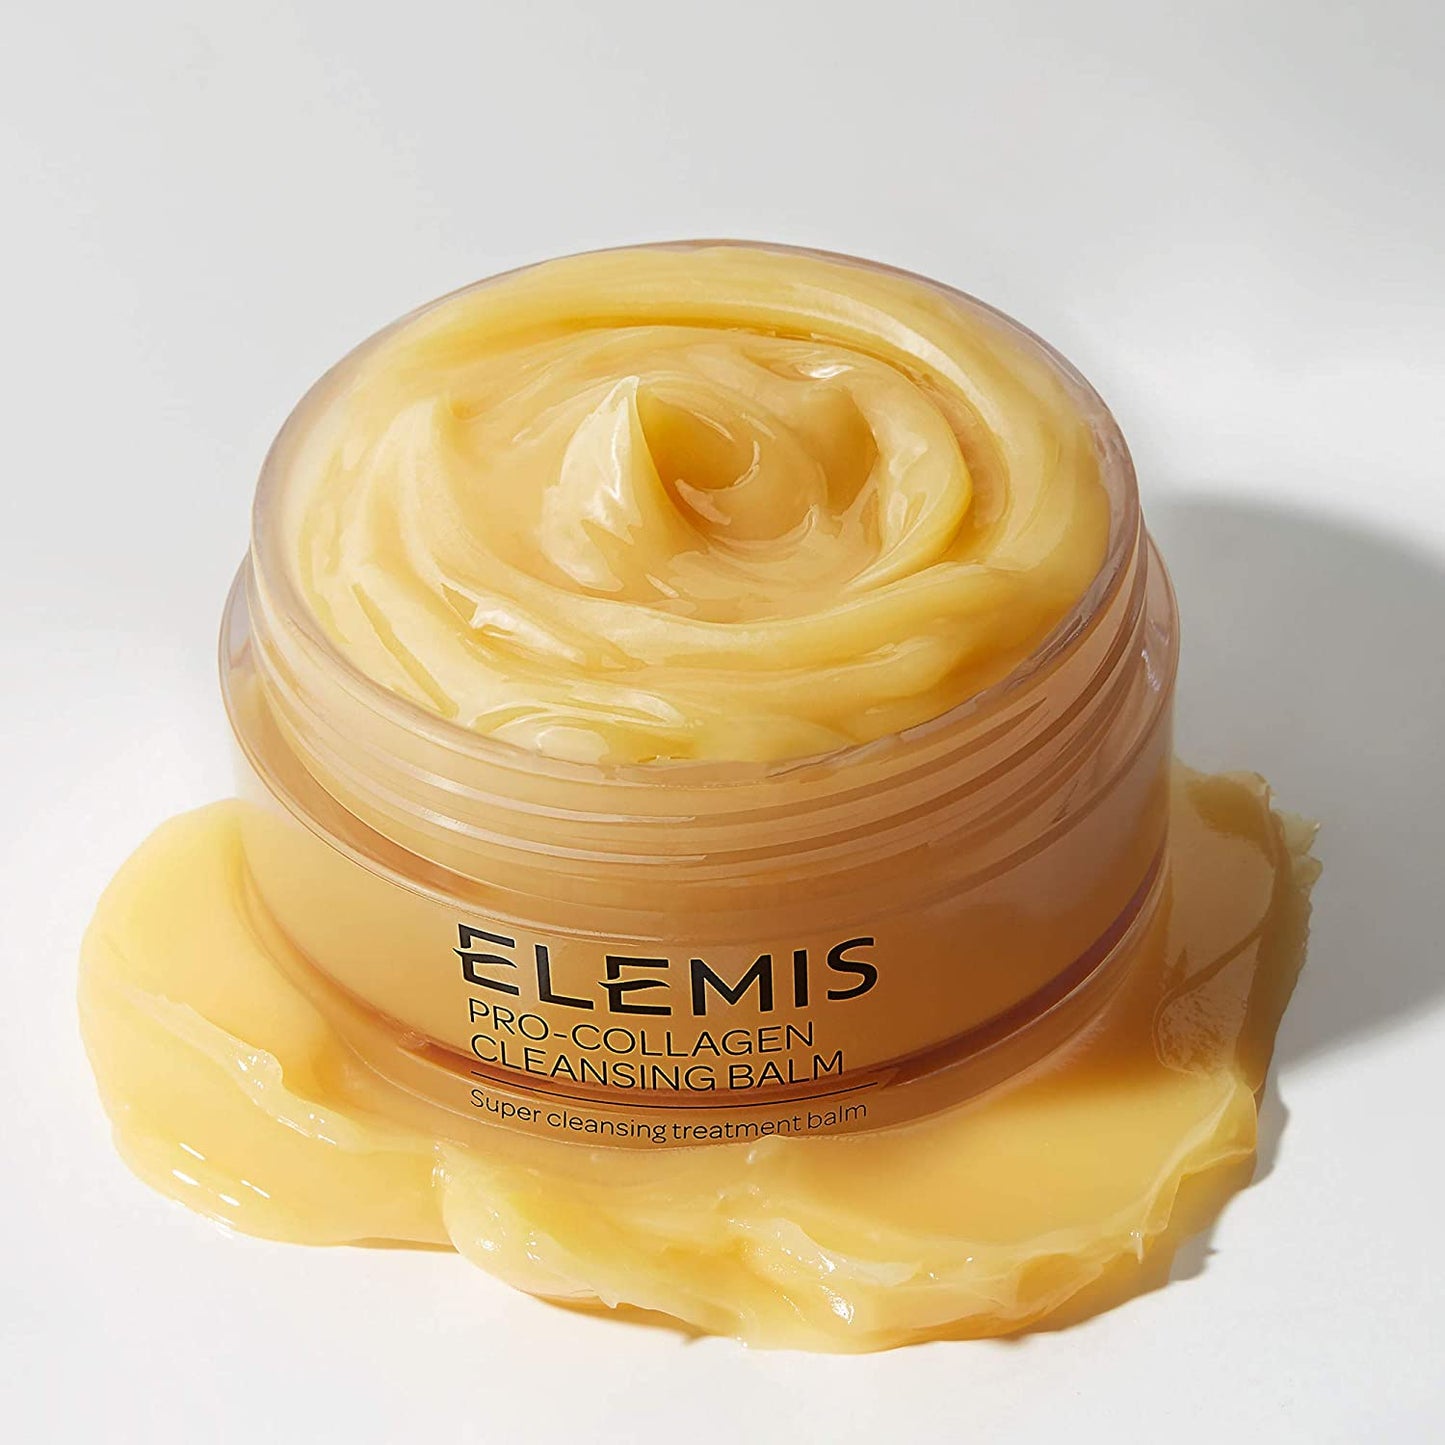 ELEMIS Pro-Collagen Cleansing Balm, Bálsamo de tratamiento súper limpiador